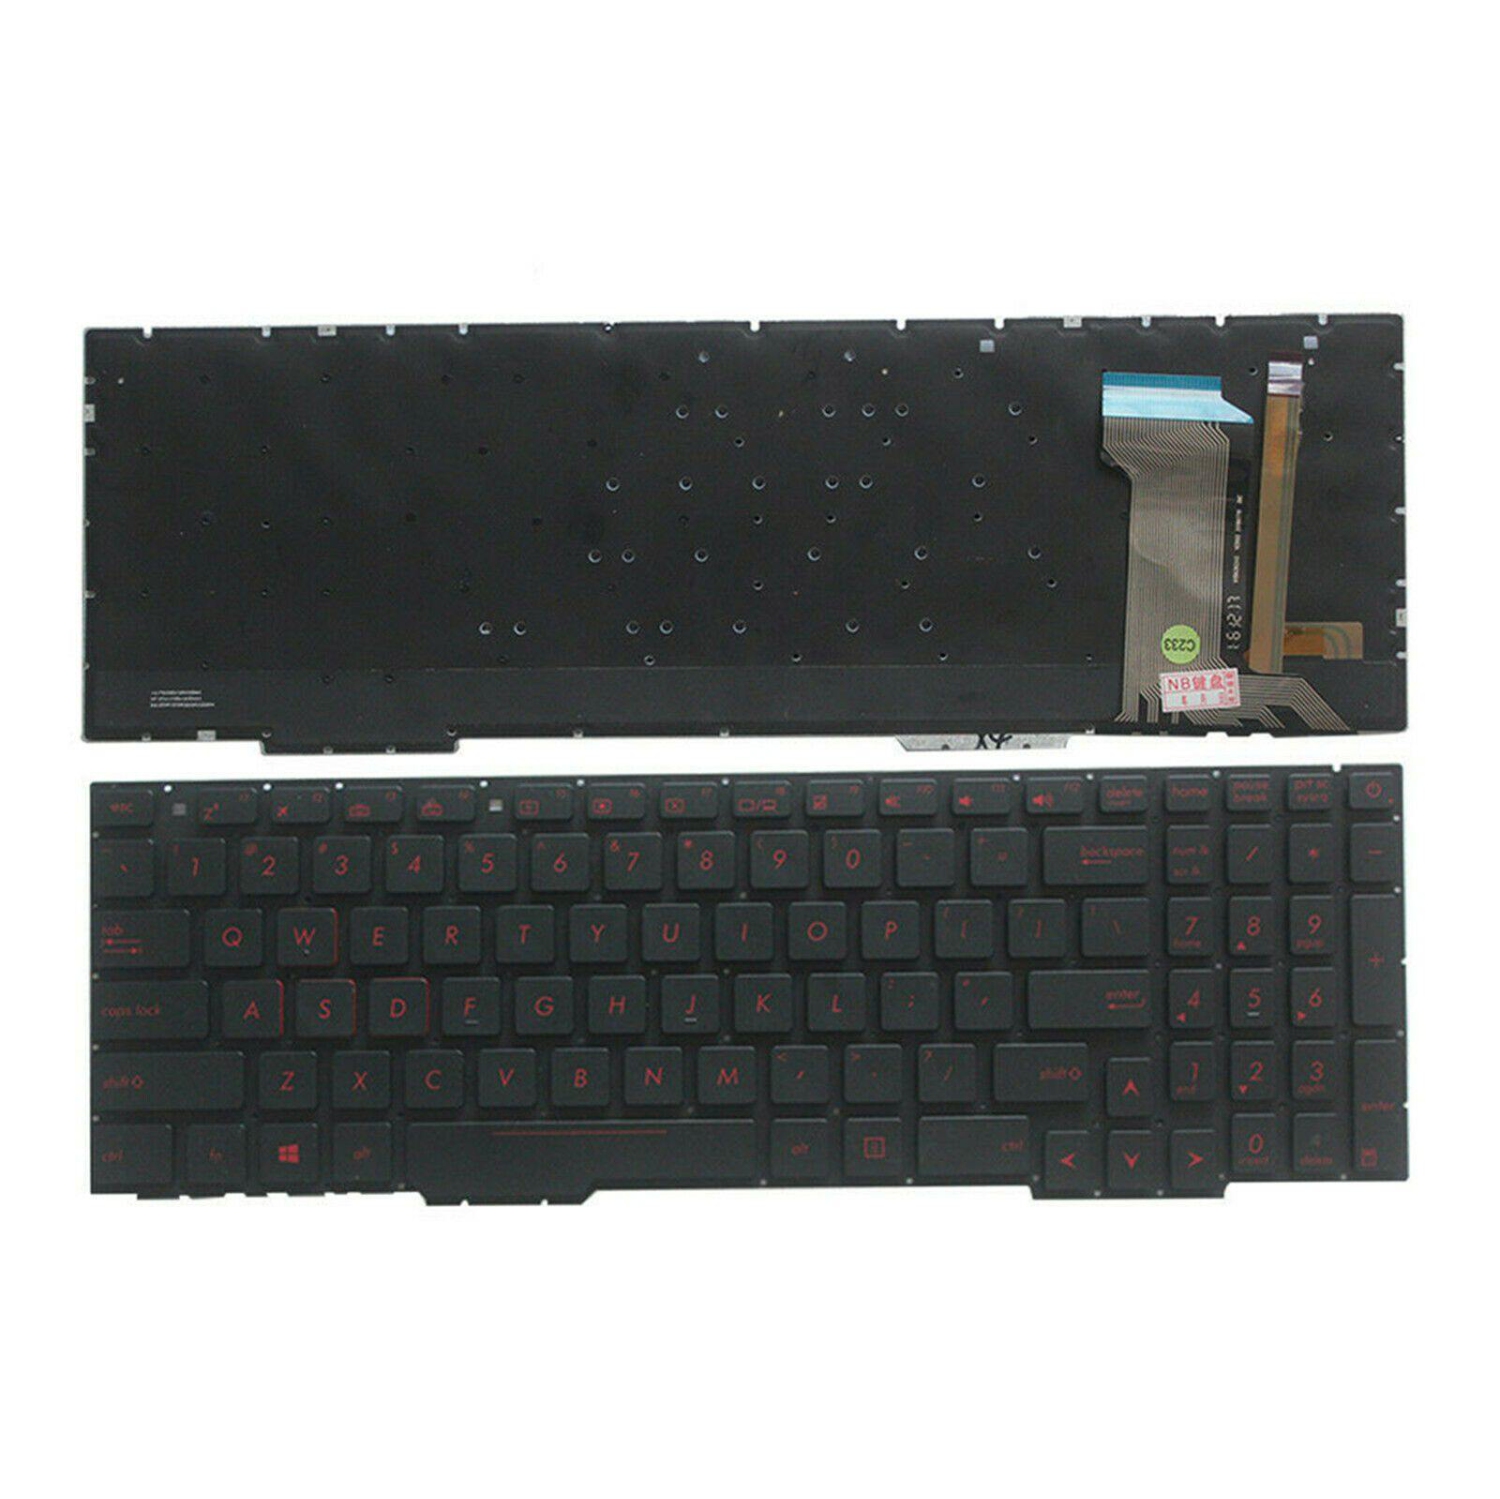 New Asus ROG Strix FX553VD FX553VE ZX553VD GL553 GL553V GL553VD GL553VE Keyboard,US English Backlit